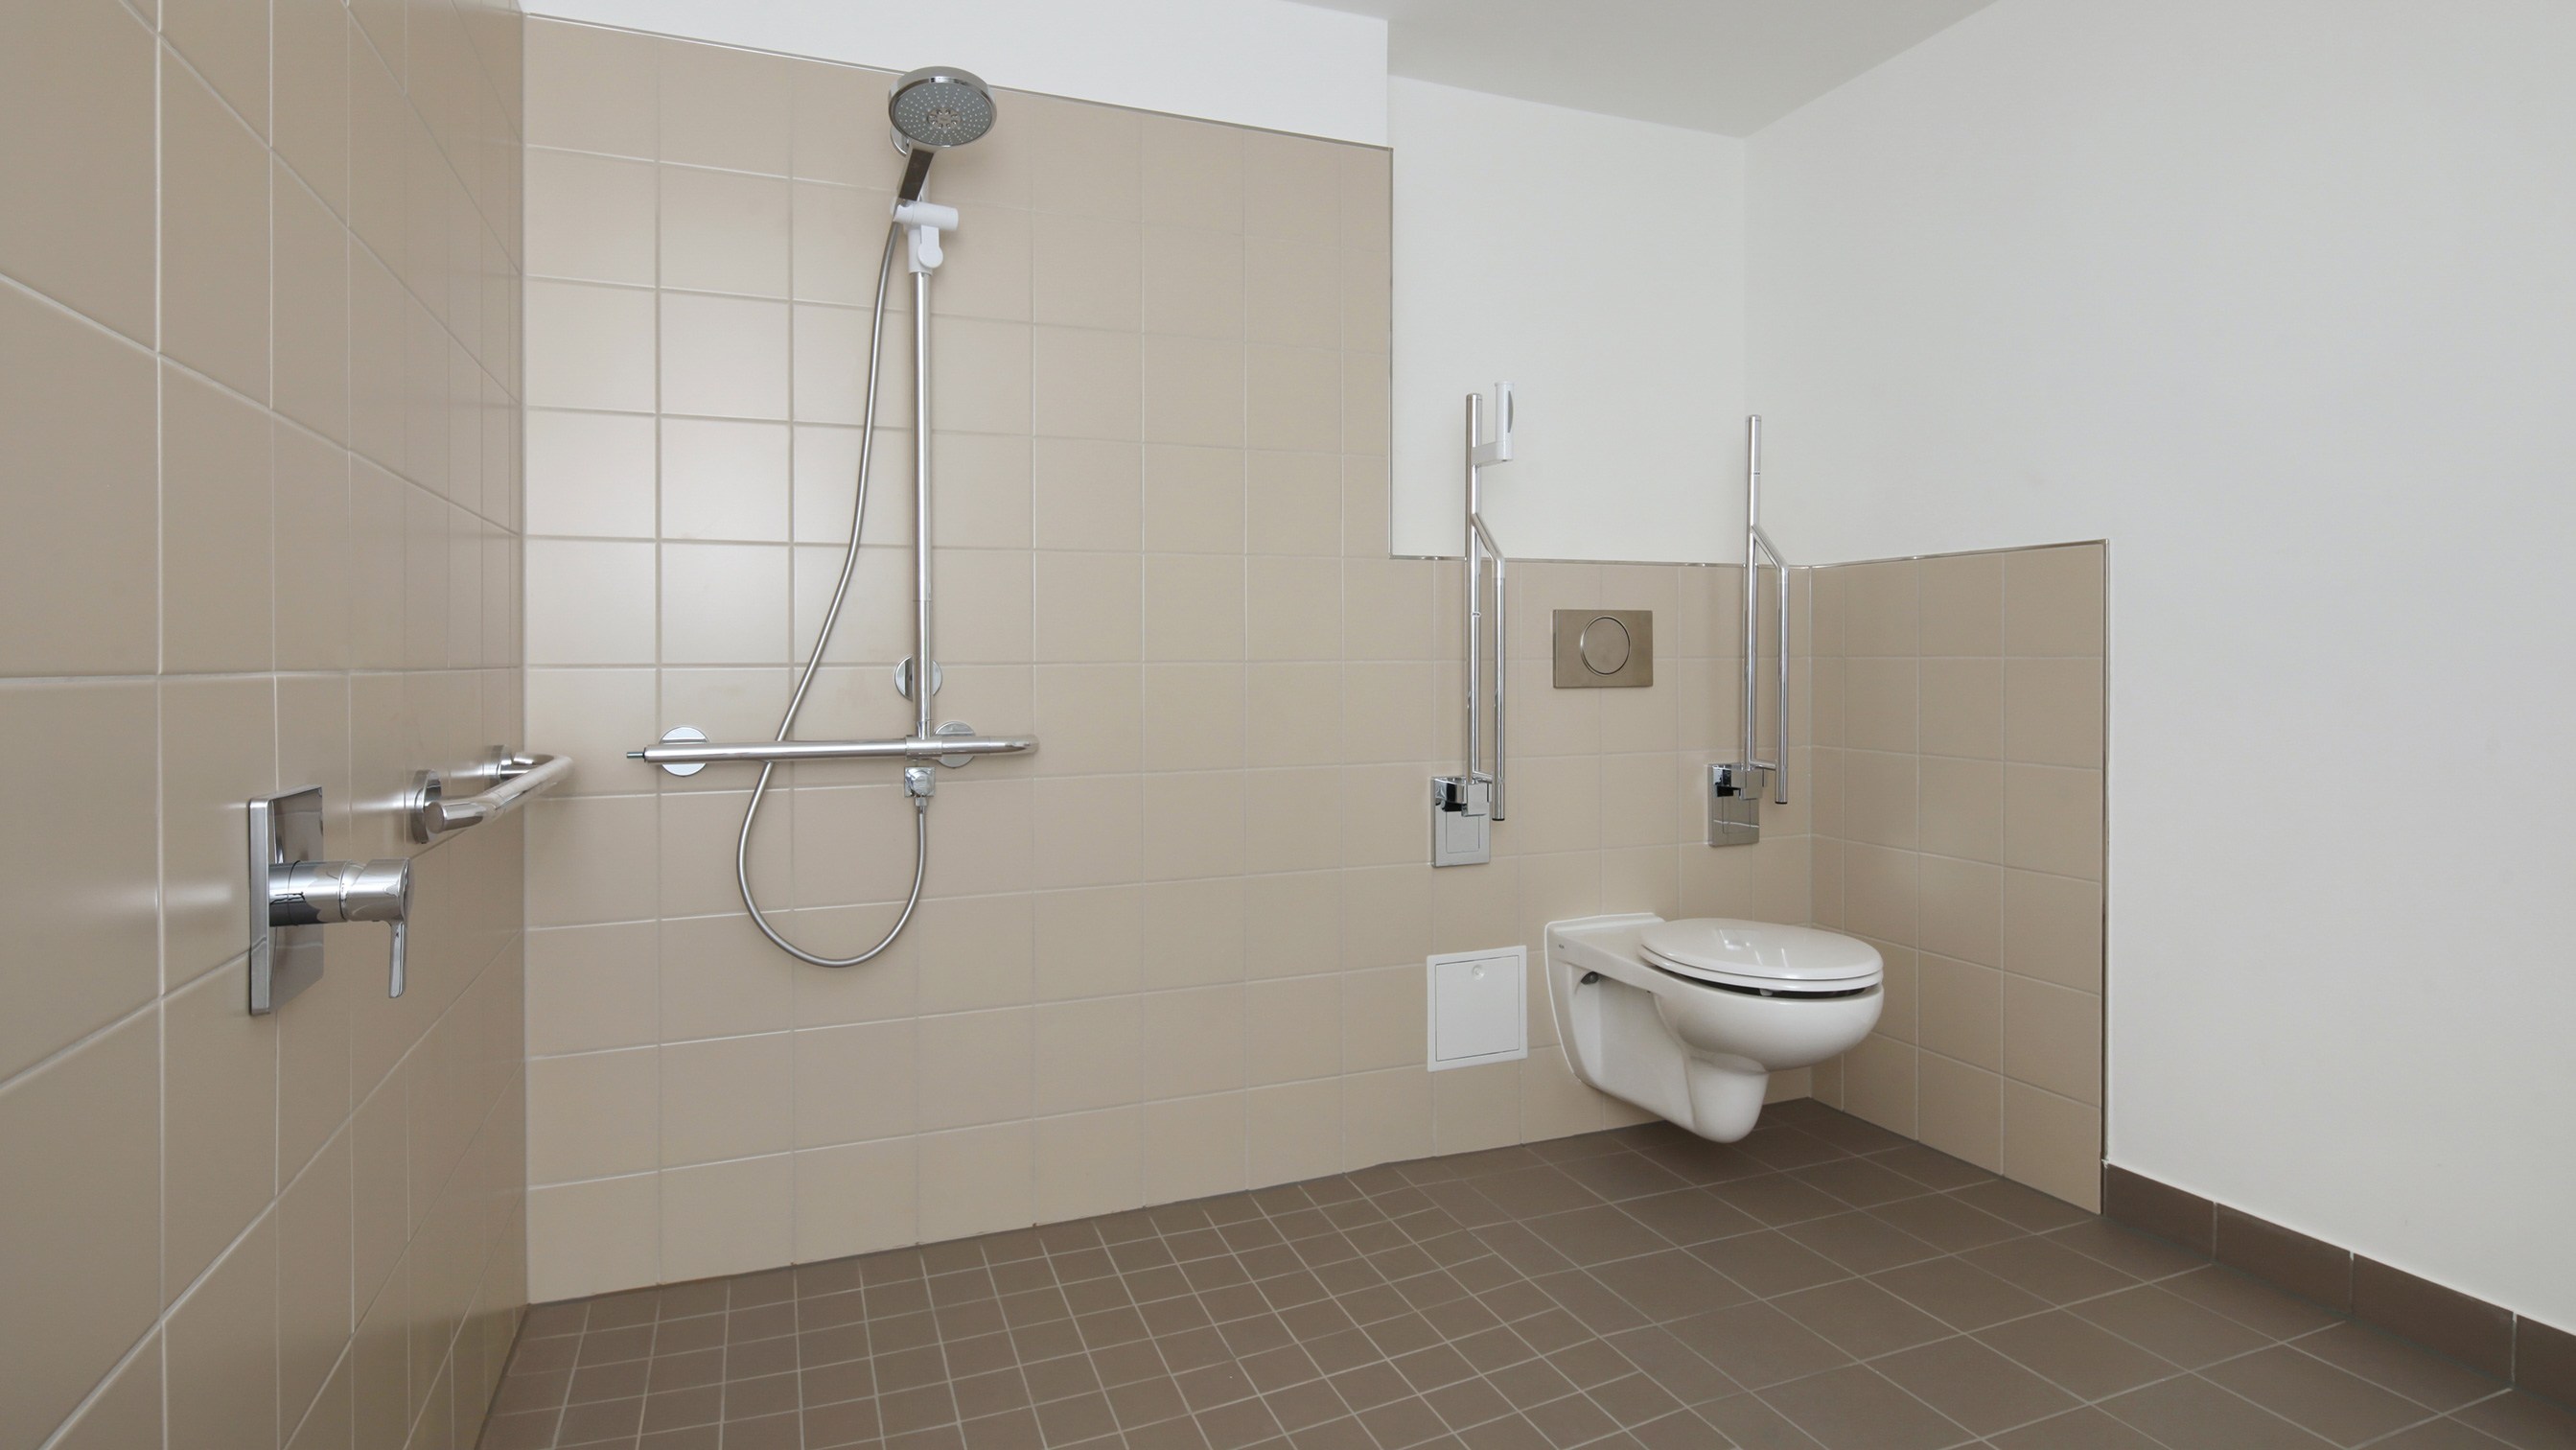 Ein barrierefreies Badezimmer mit ebenerdig zugänglicher Dusche und Behindertentoilette